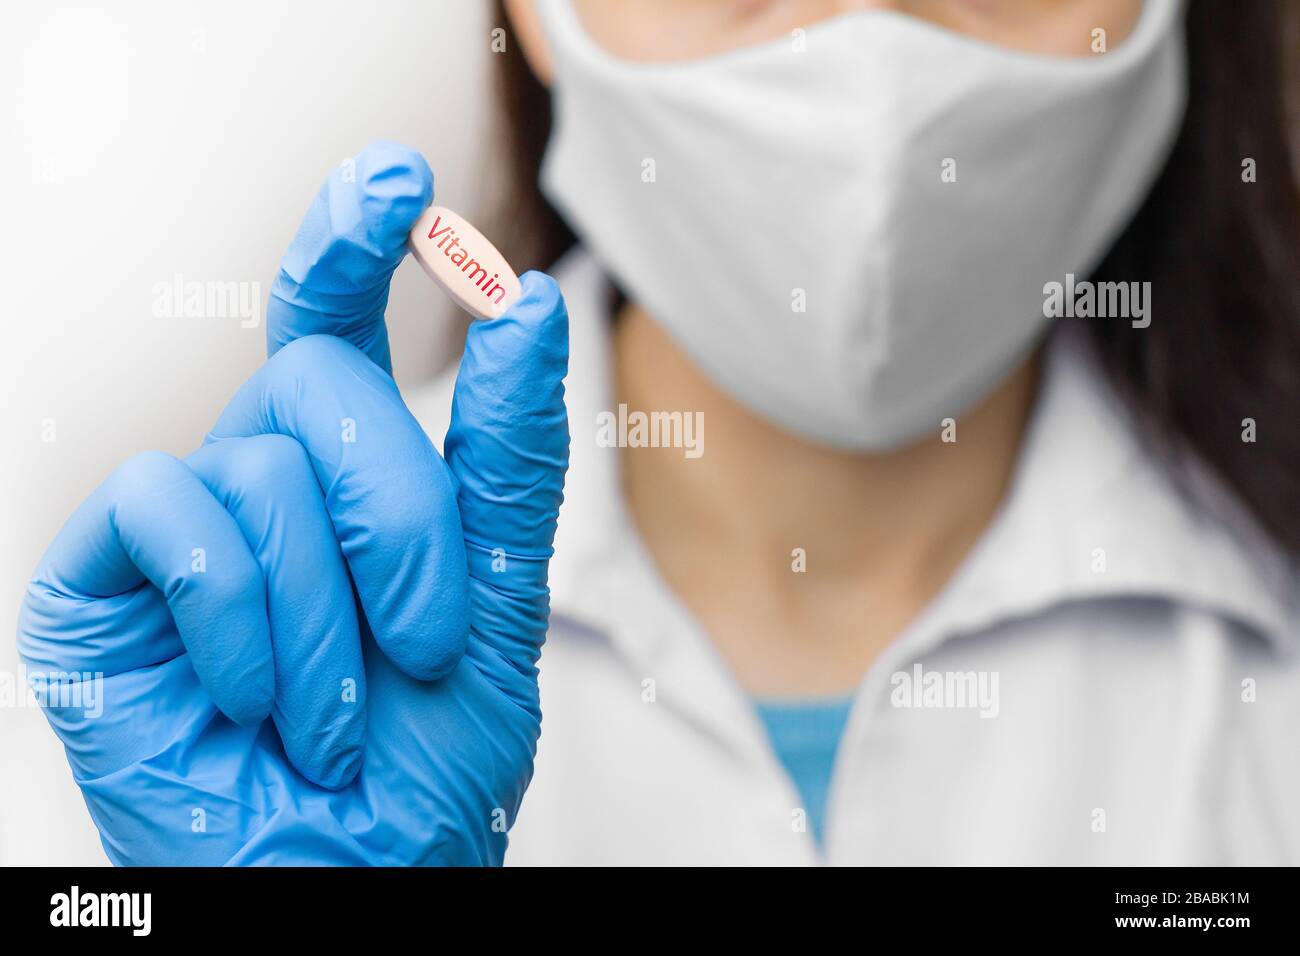 Pillola di vitamina in mano in guanti blu. La femmina sta tenendo un medicinale. Farmaci contro il coronavirus, 2019-nCoV, SARS-nCov, COVID-2019 outbreaking. Foto Stock